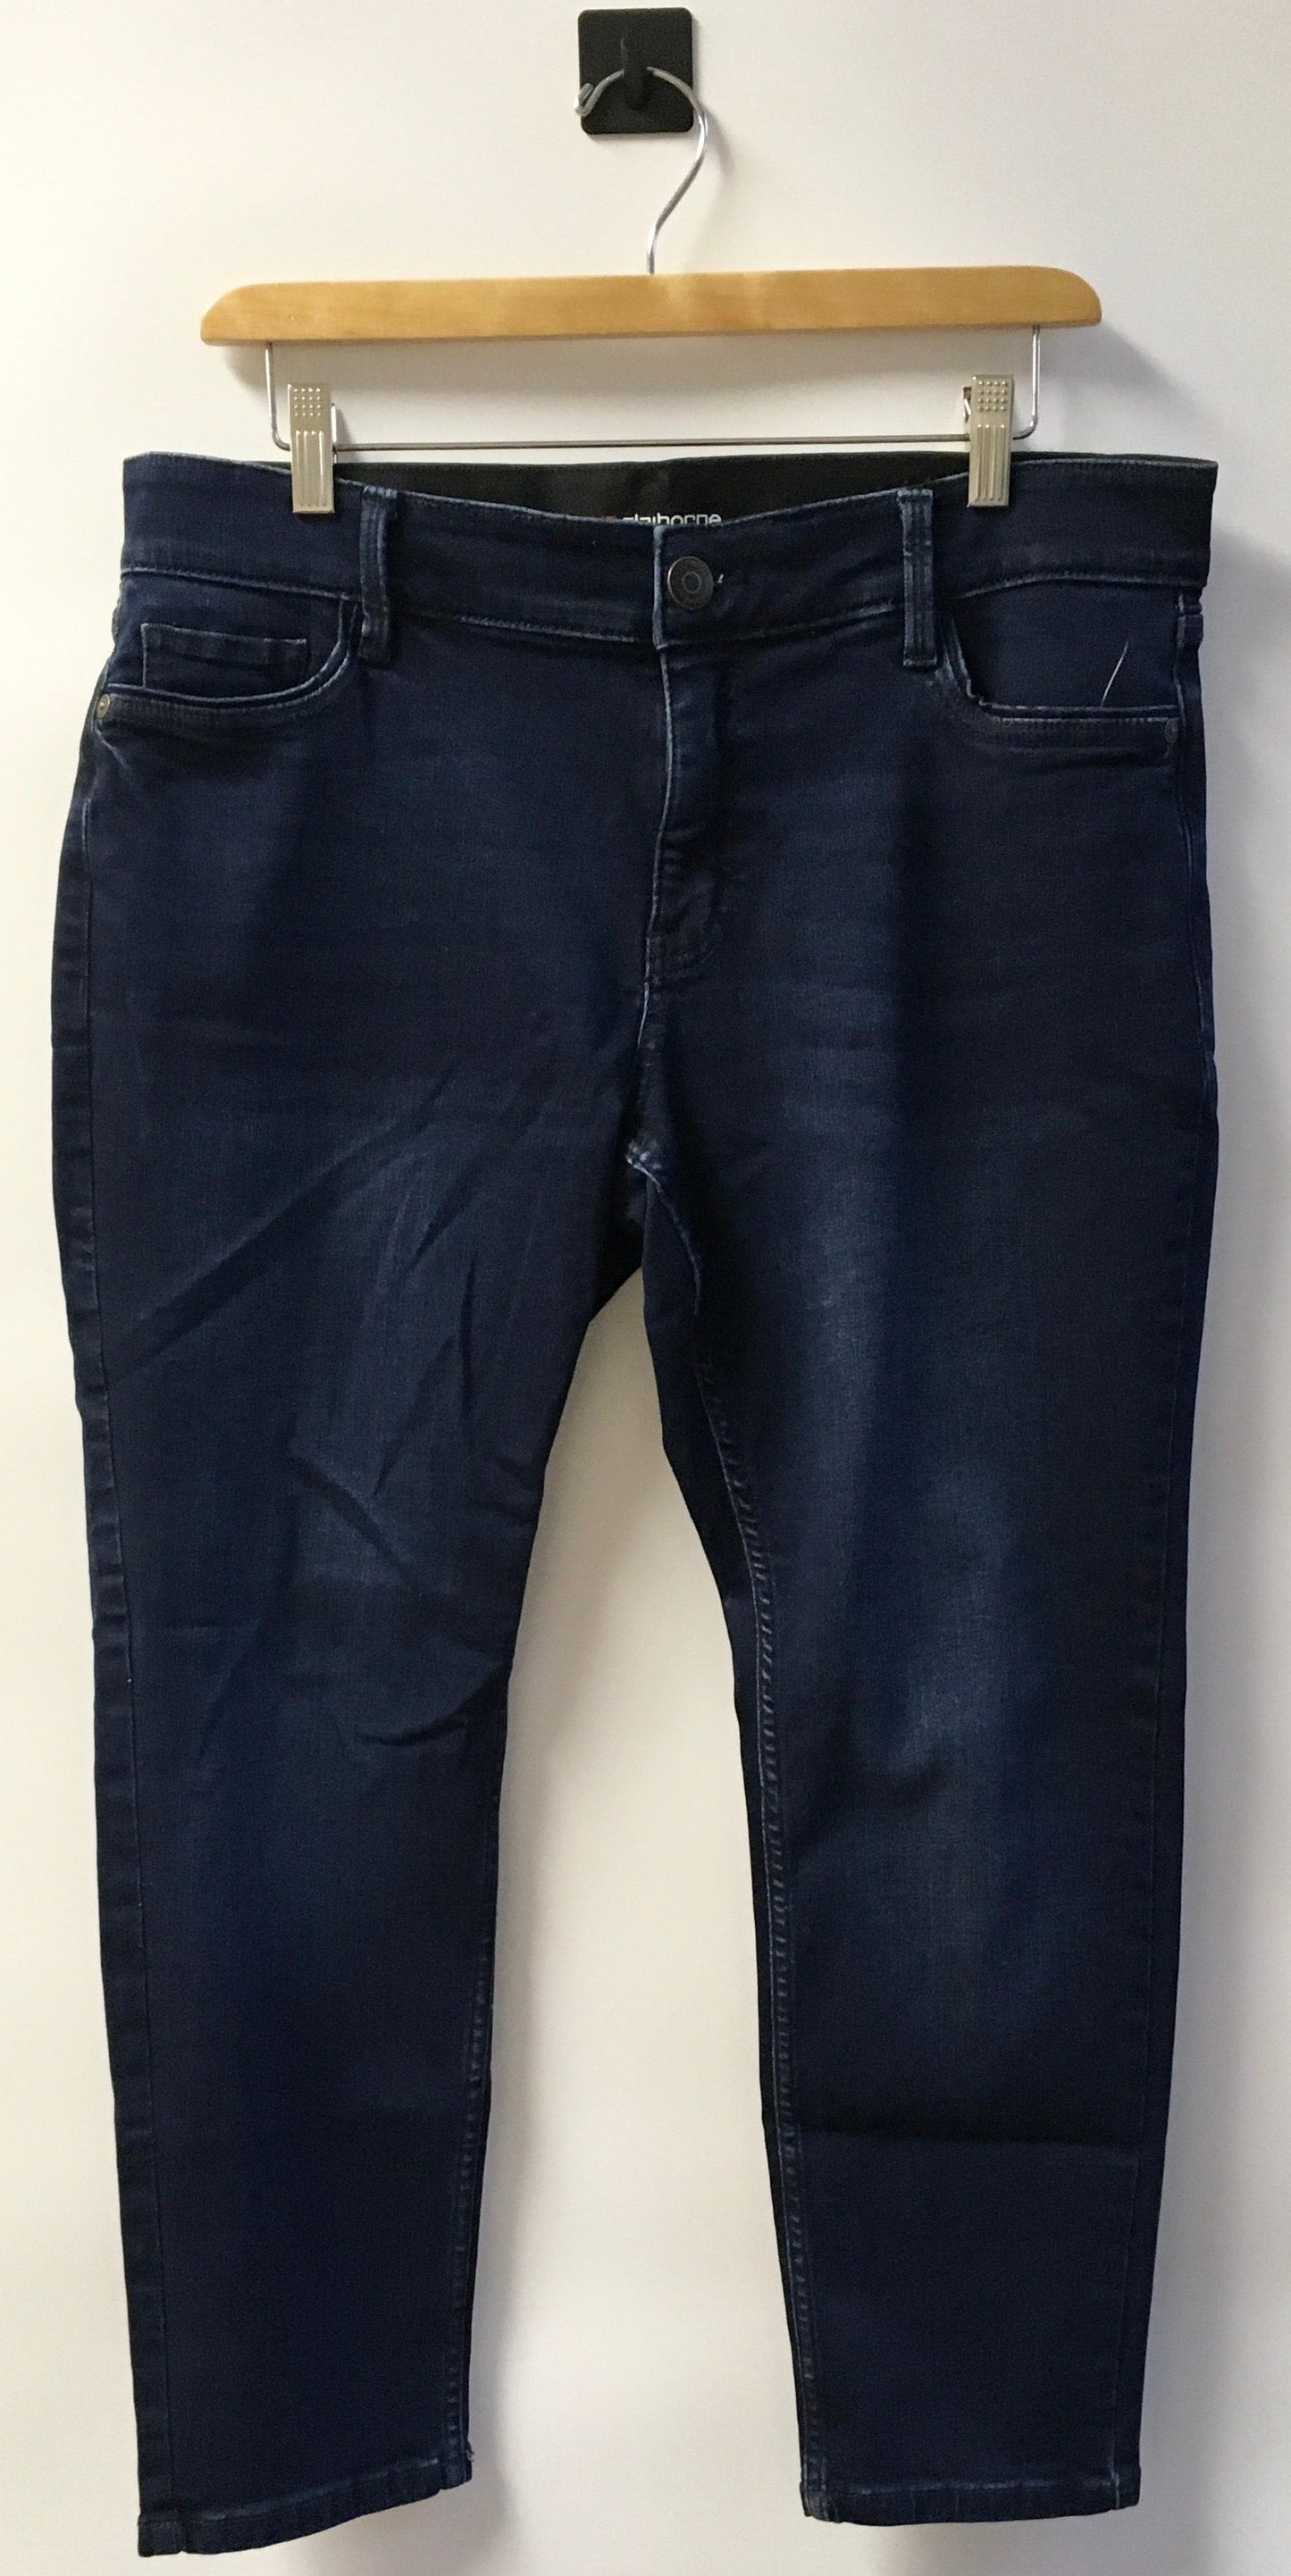 Jeans Skinny By Liz Claiborne  Size: 12petite